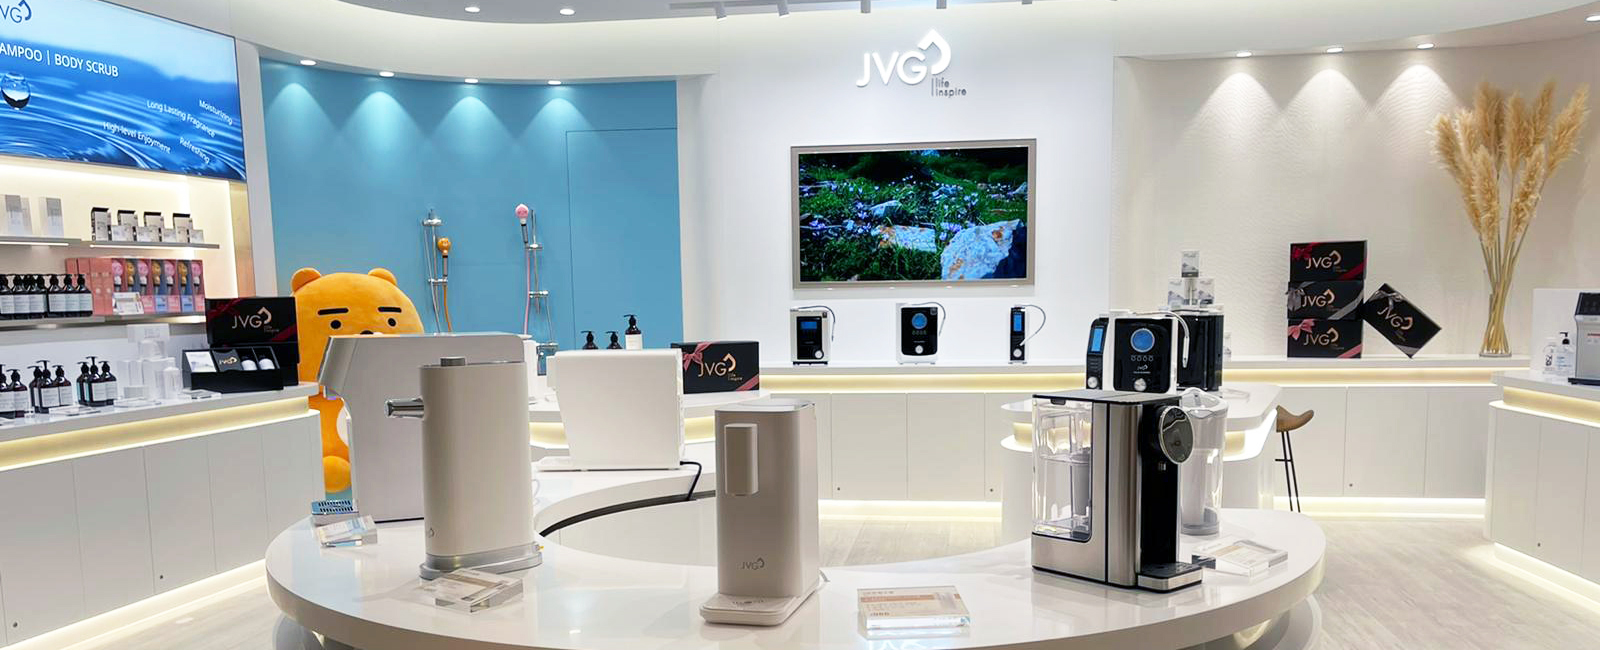 JVG retail shop